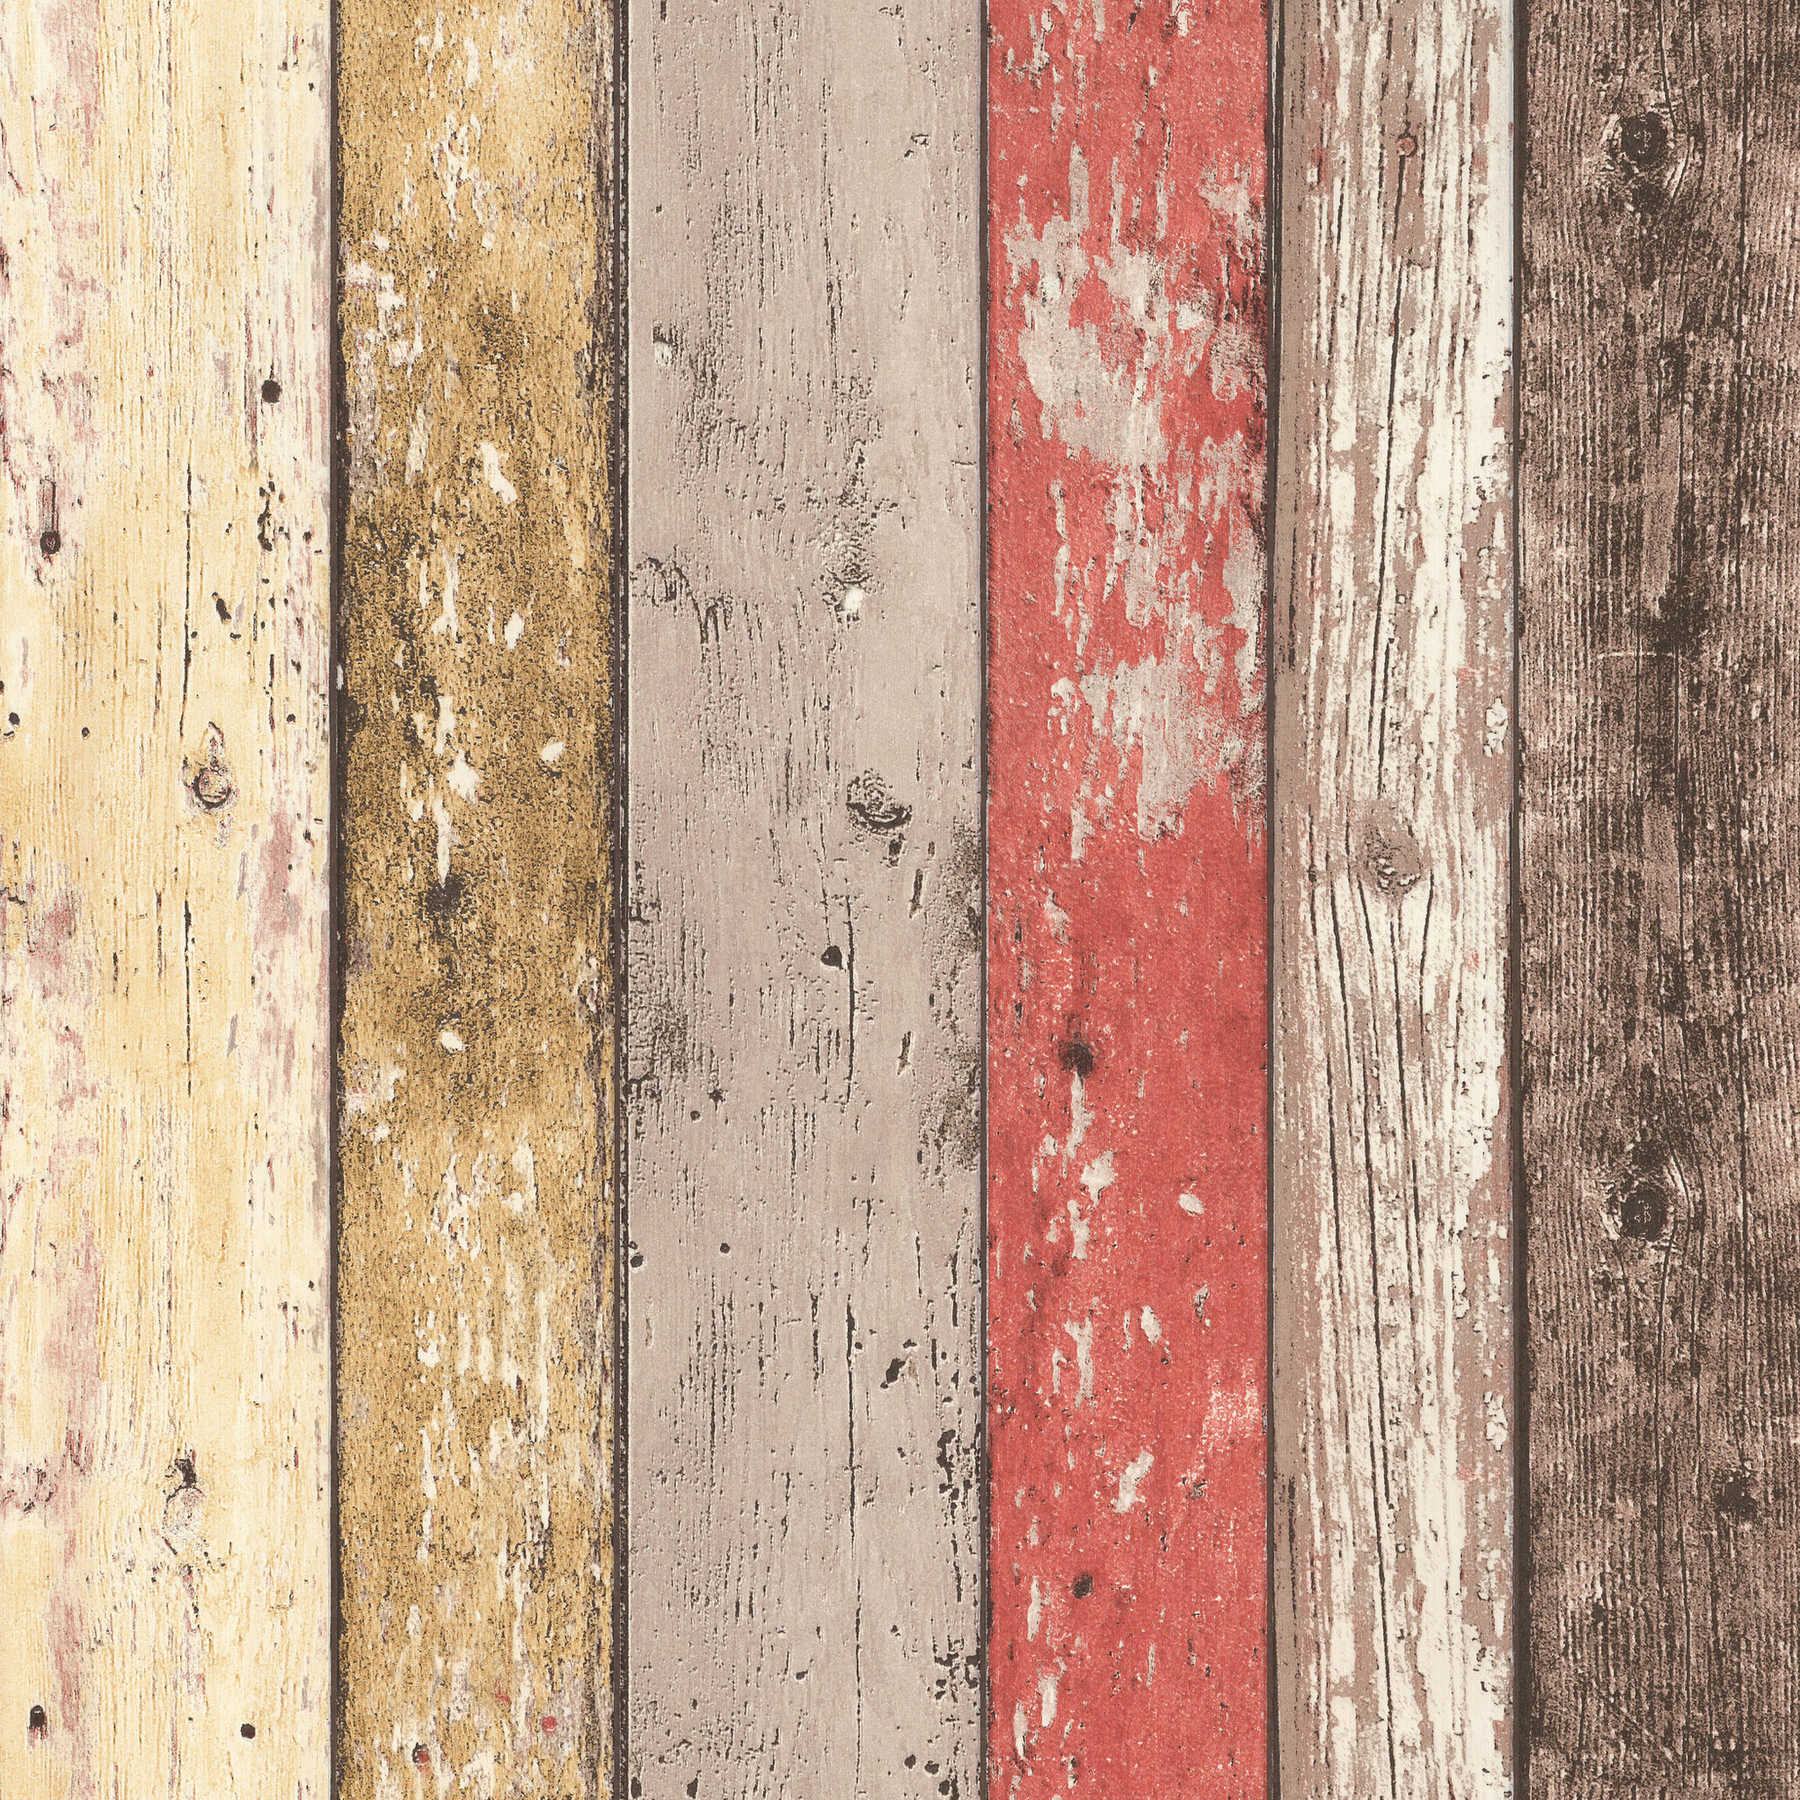             Vliestapete Holz Bretter im Shabby Chic Stil – Braun, Rot
        